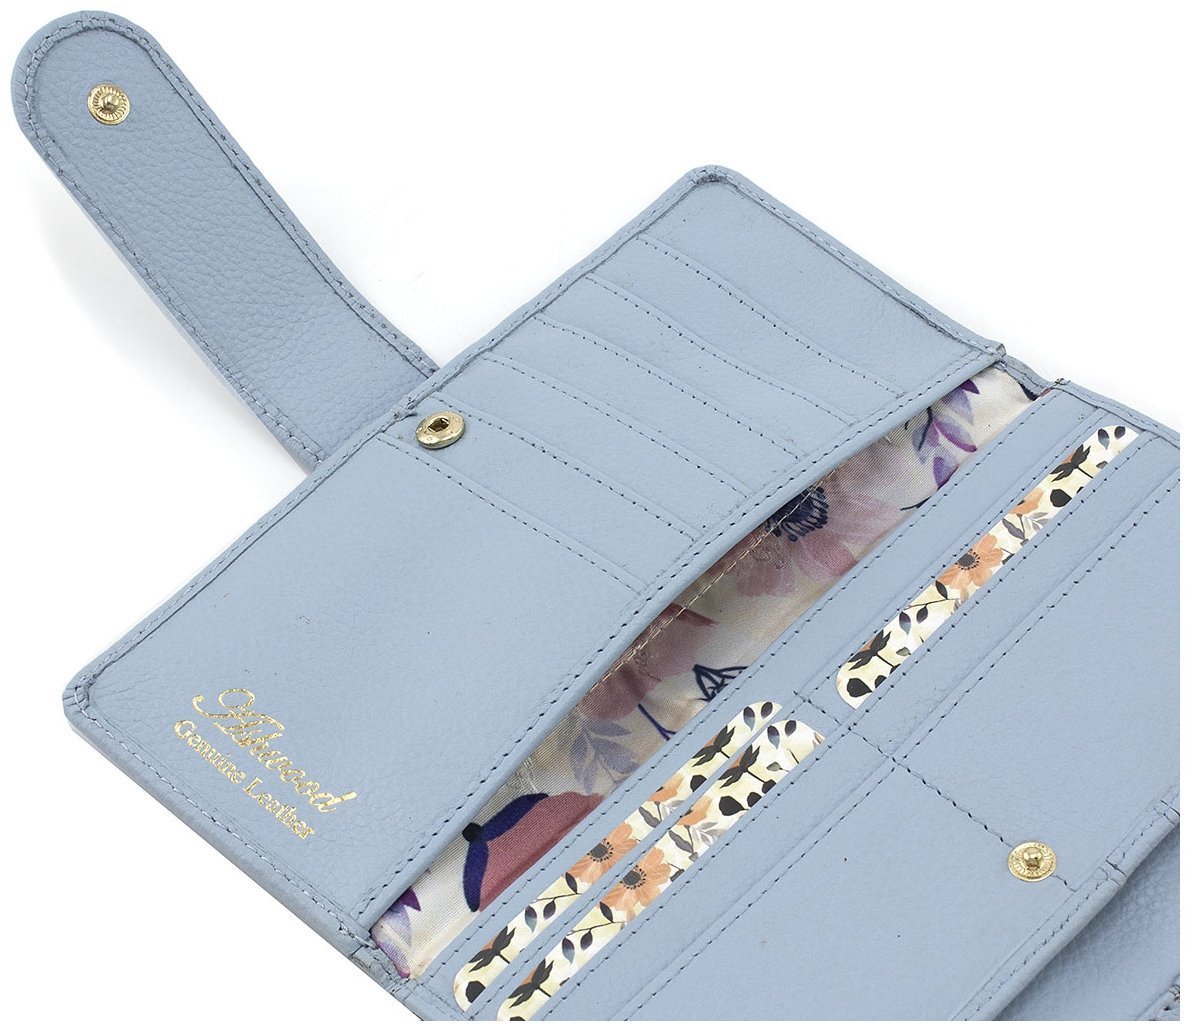 Крупный женский кошелек из натуральной кожи голубого цвета под много карт Ashwood 69649